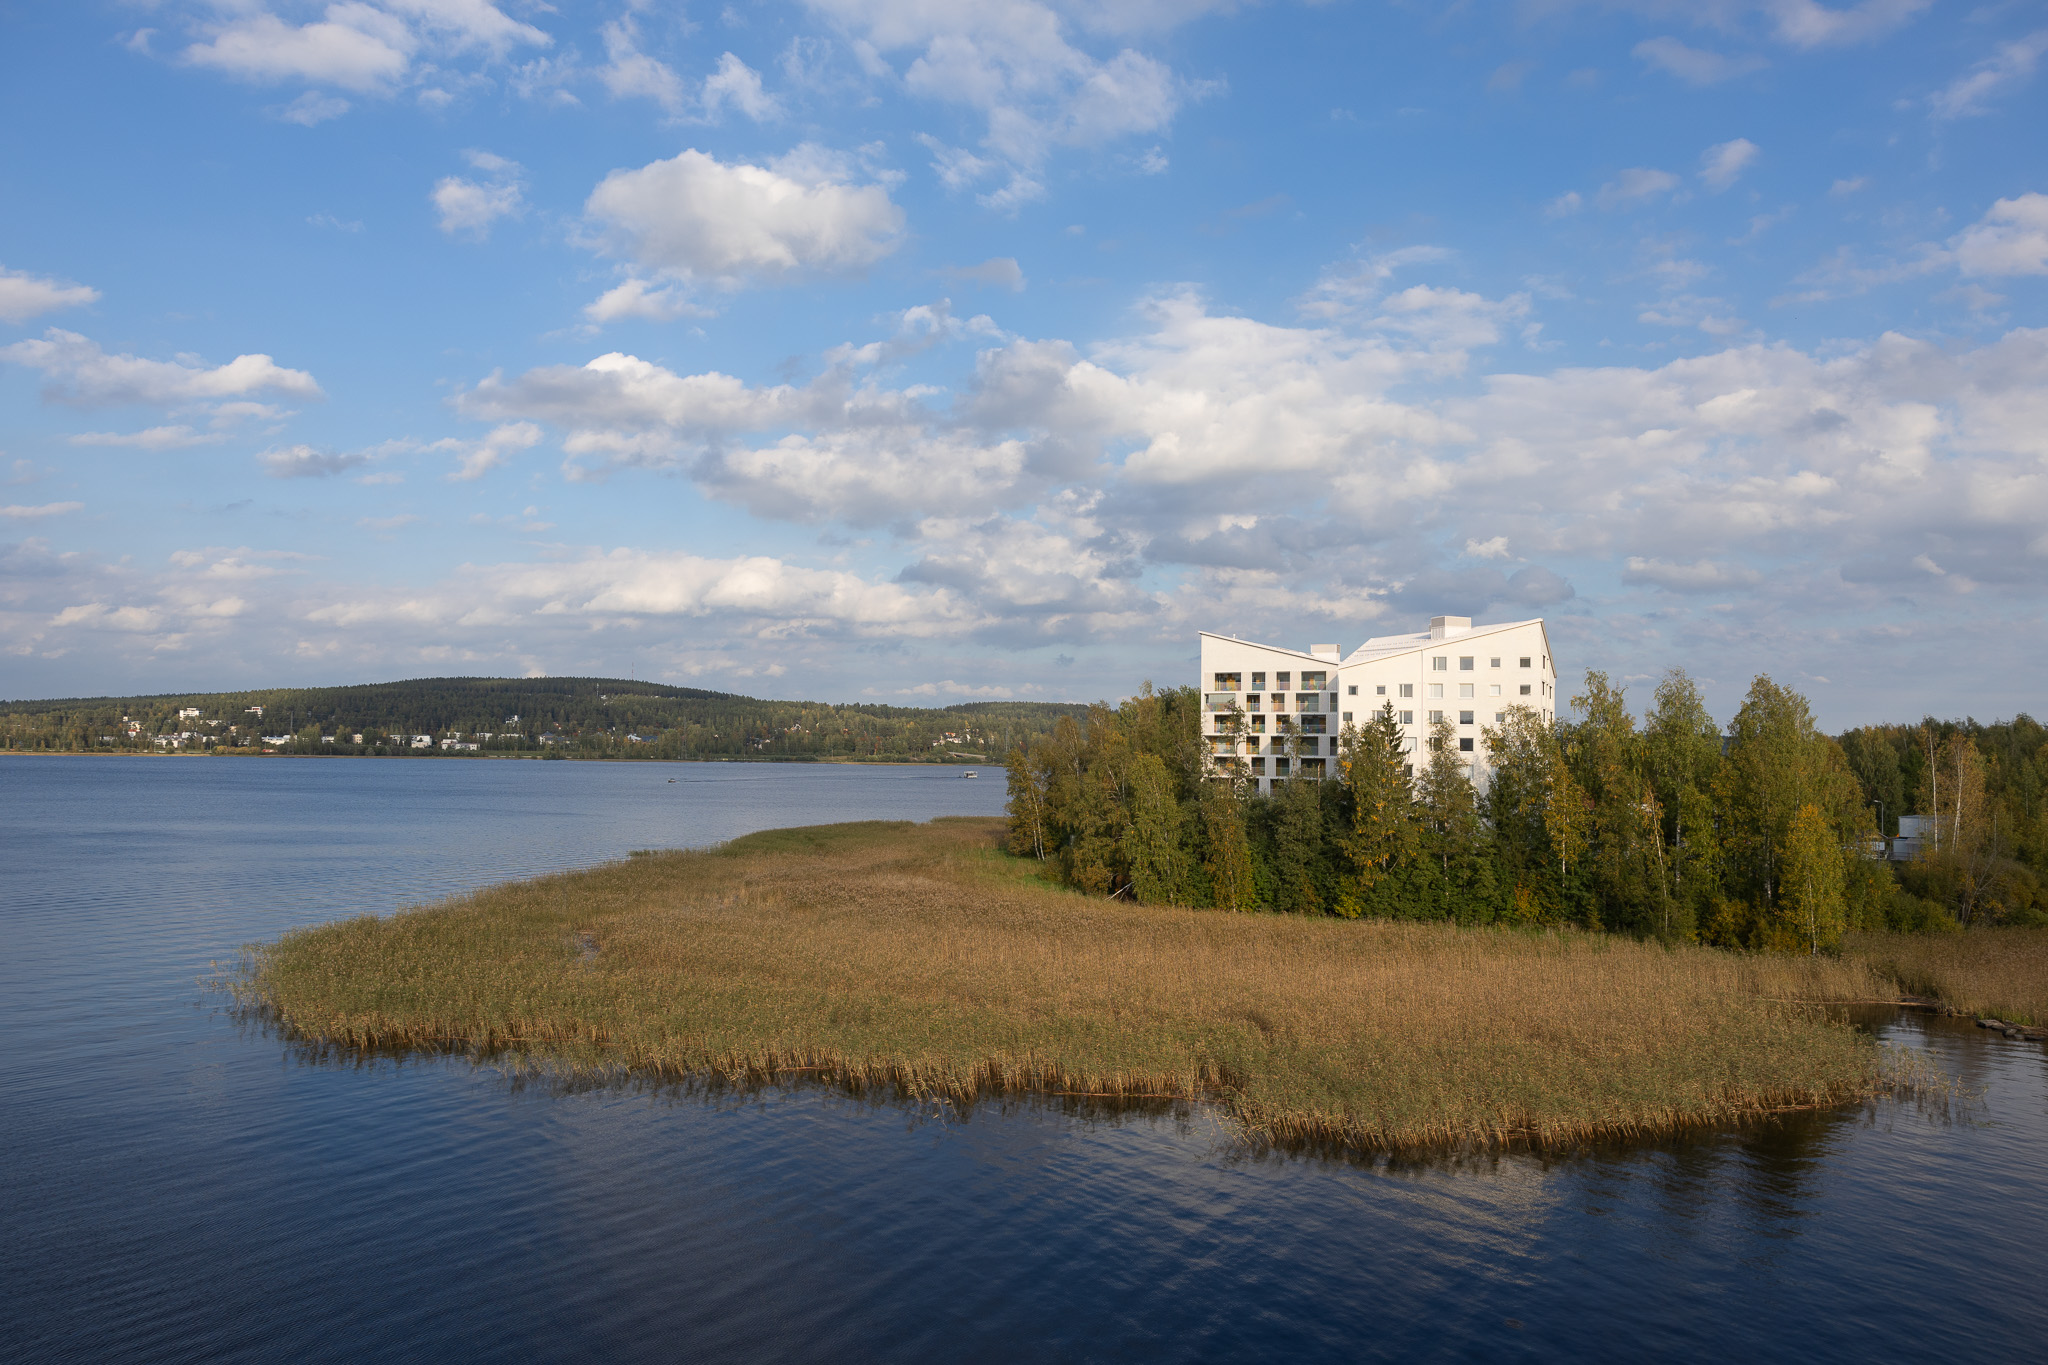 Suuruspää Housing in Jyväskylä in relation to the surrounding landscape